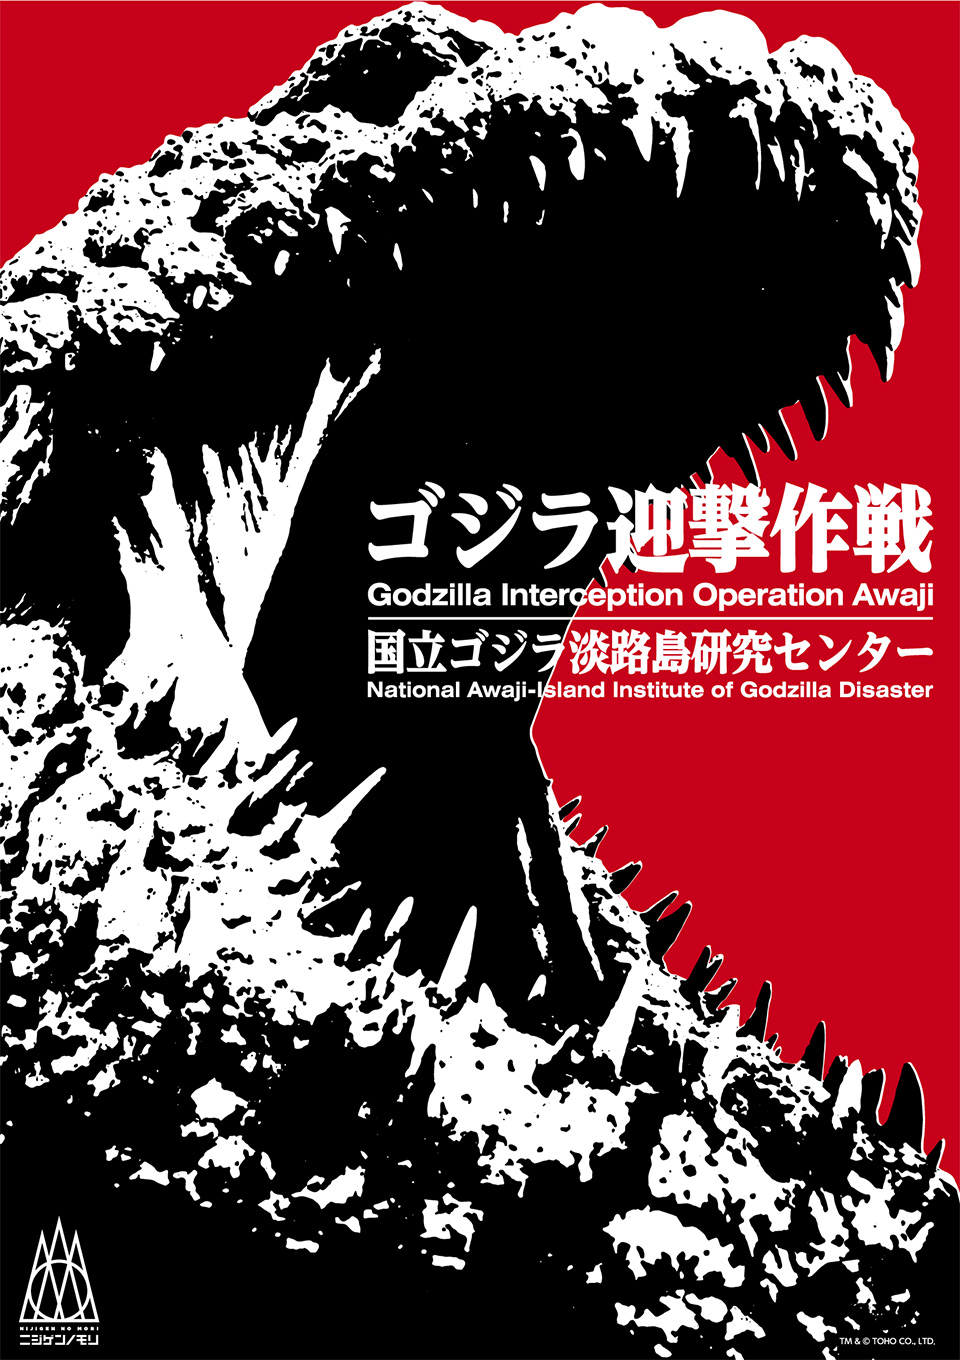 Life-size Godzilla